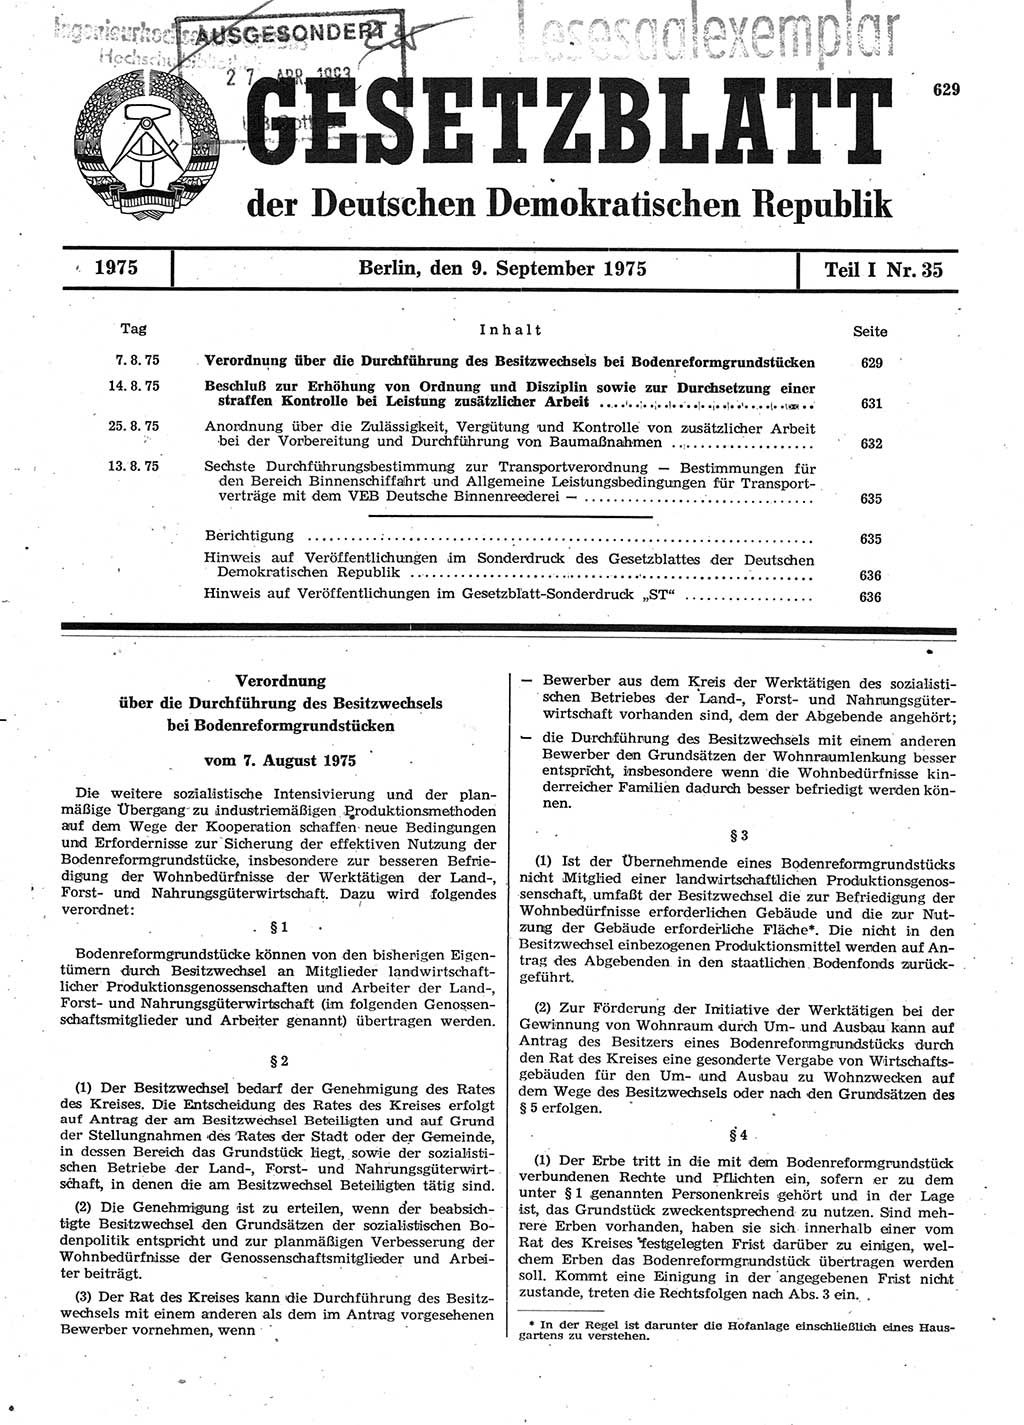 Gesetzblatt (GBl.) der Deutschen Demokratischen Republik (DDR) Teil Ⅰ 1975, Seite 629 (GBl. DDR Ⅰ 1975, S. 629)